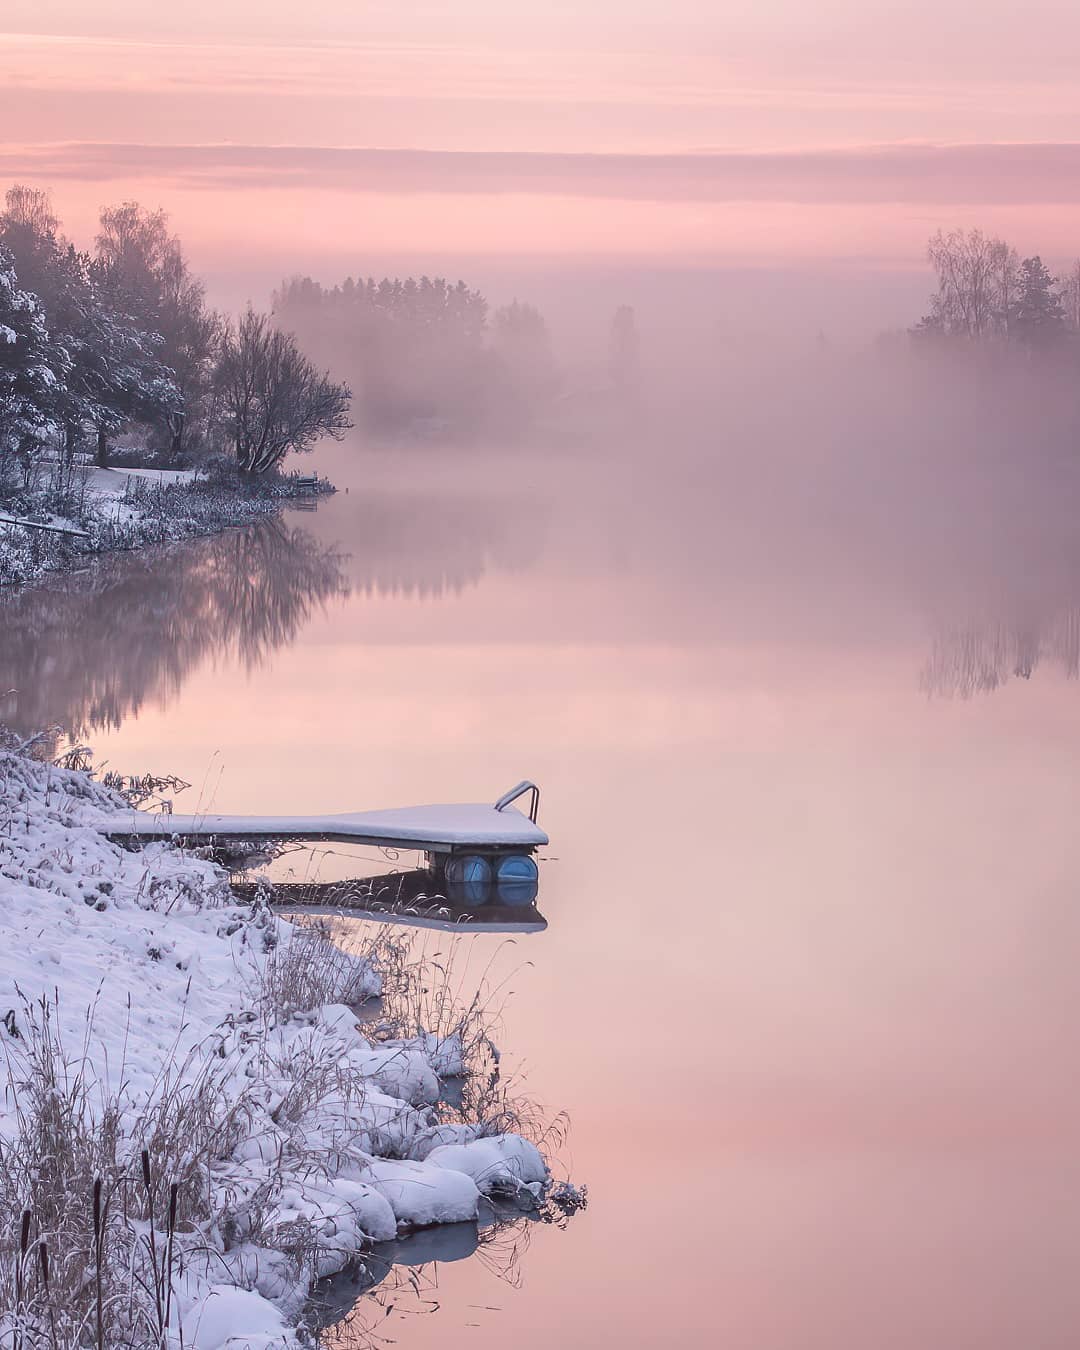 Финляндия зимой: в гостях у сказки Рисикко, снимает, Читать, подписчиков, более, Instagram, делится, работами, Своими, природы, дикой, фотографий, пейзажей, много, фотографии, Jukka, натурной, уличной, основном, фокусируется